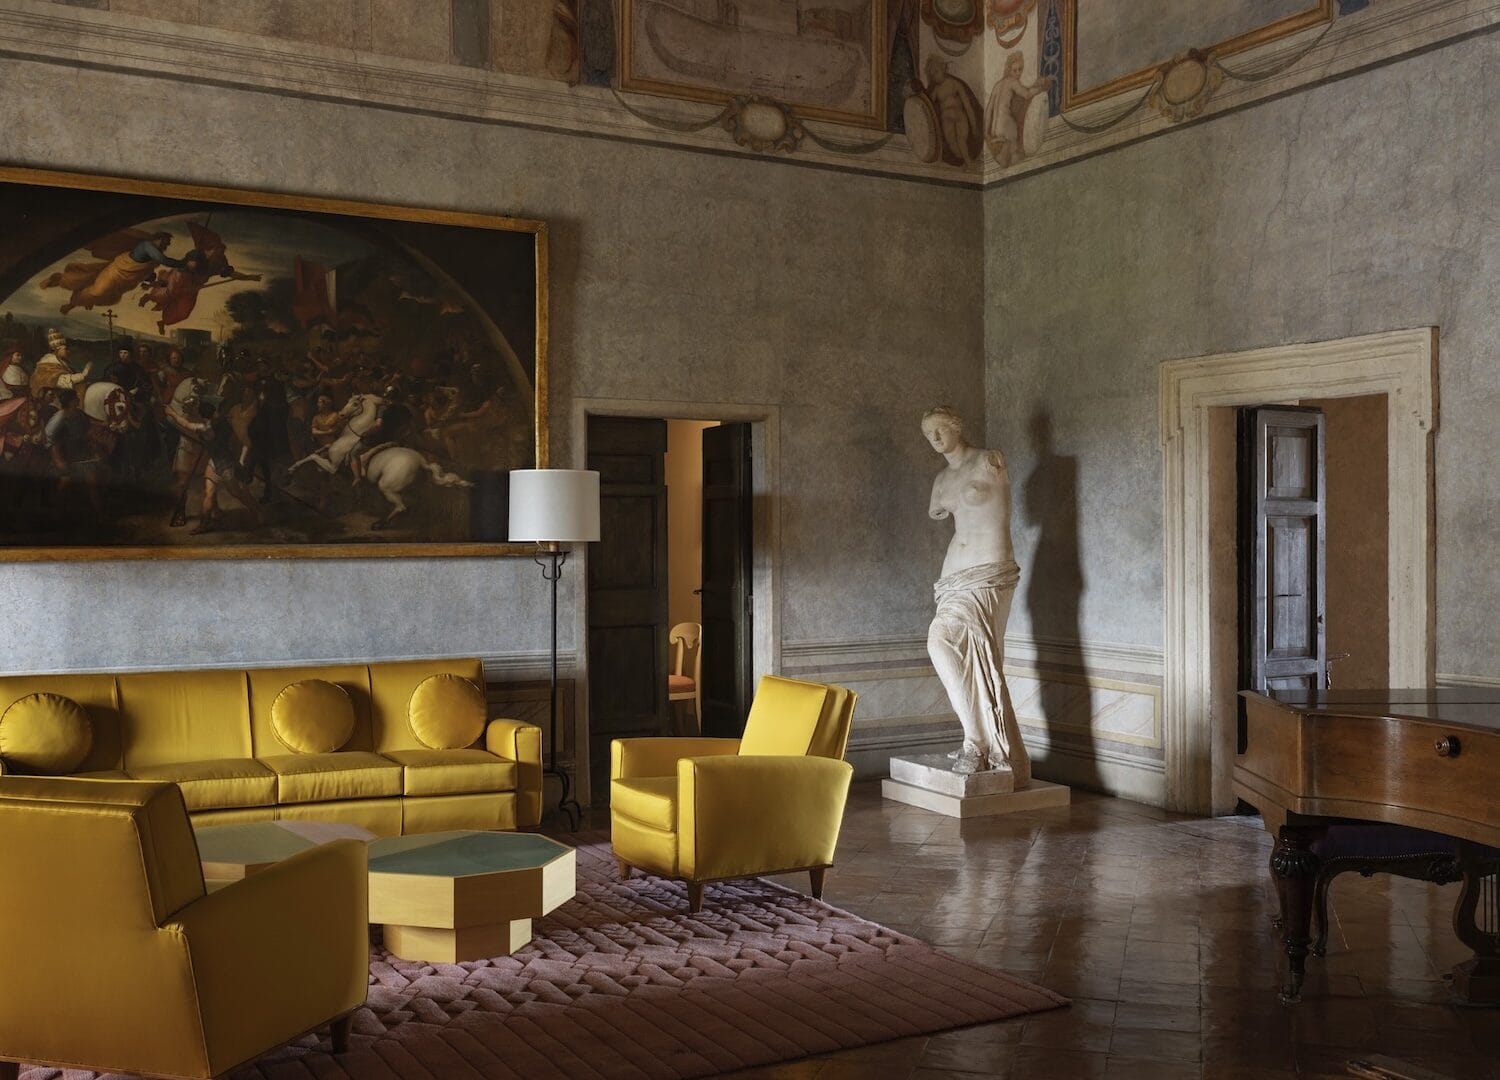 Rzymska Villa Medici ożywiona duchem współczesnego designu